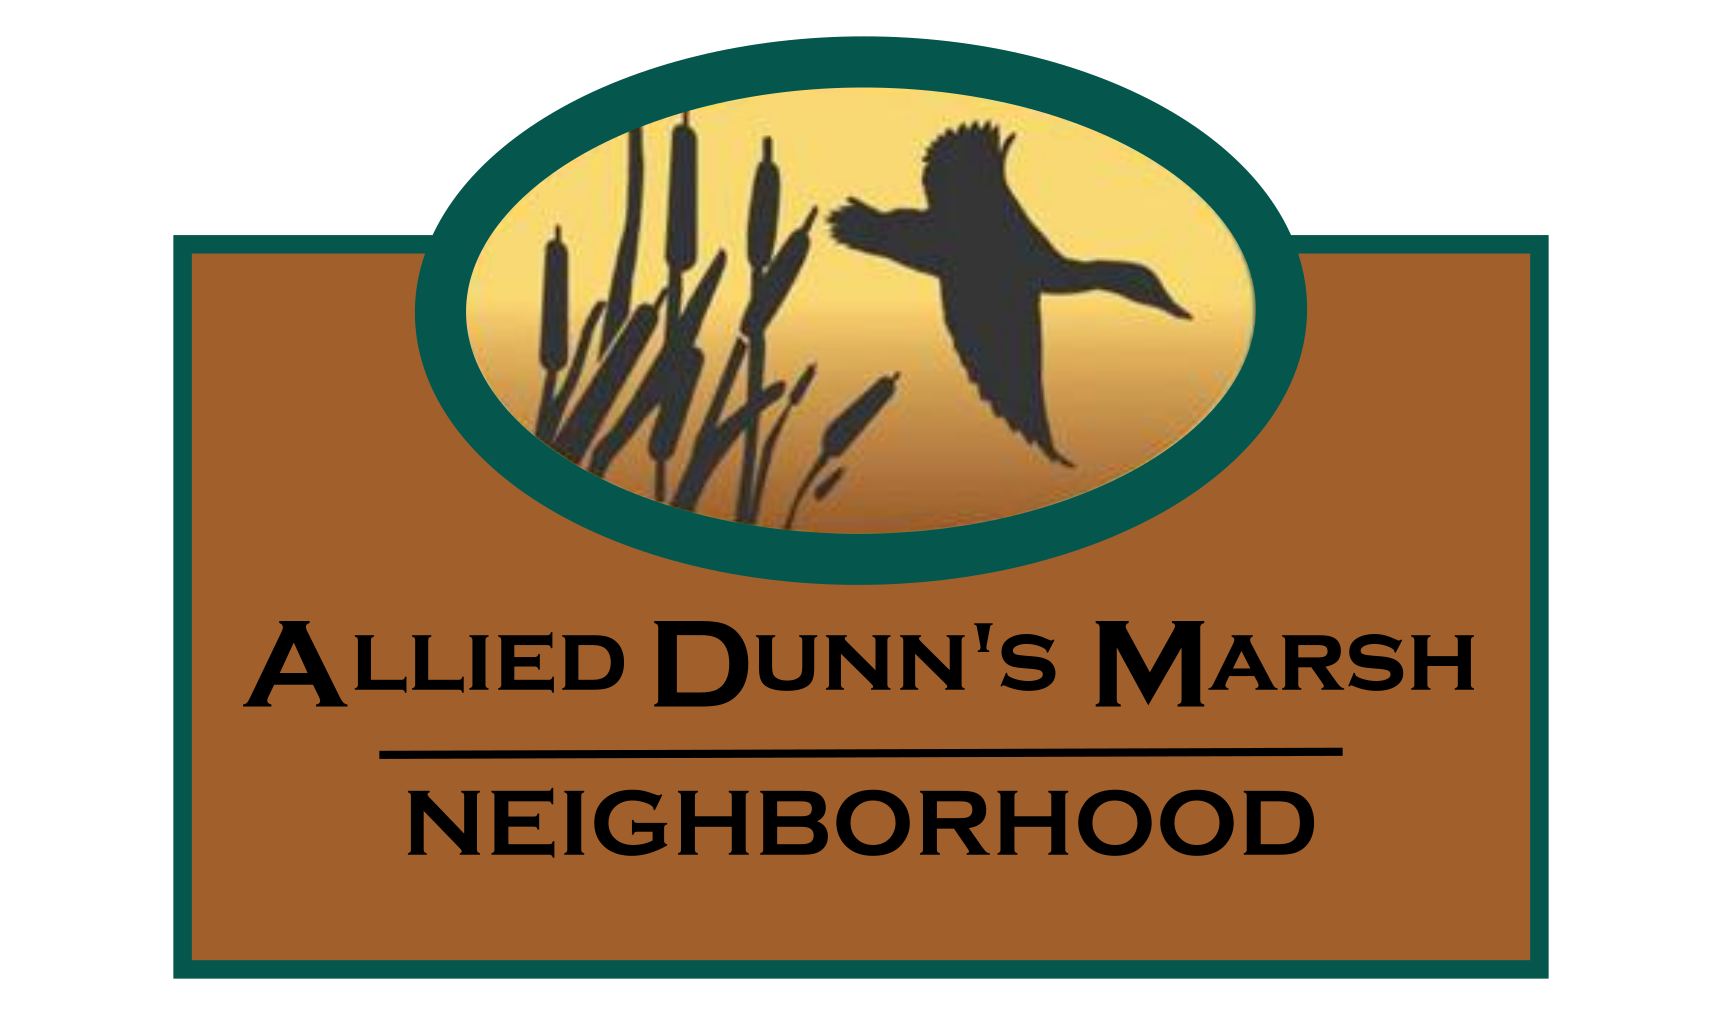 Allied Dunn’s Marsh Neighborhood Sees Changes — for the Better